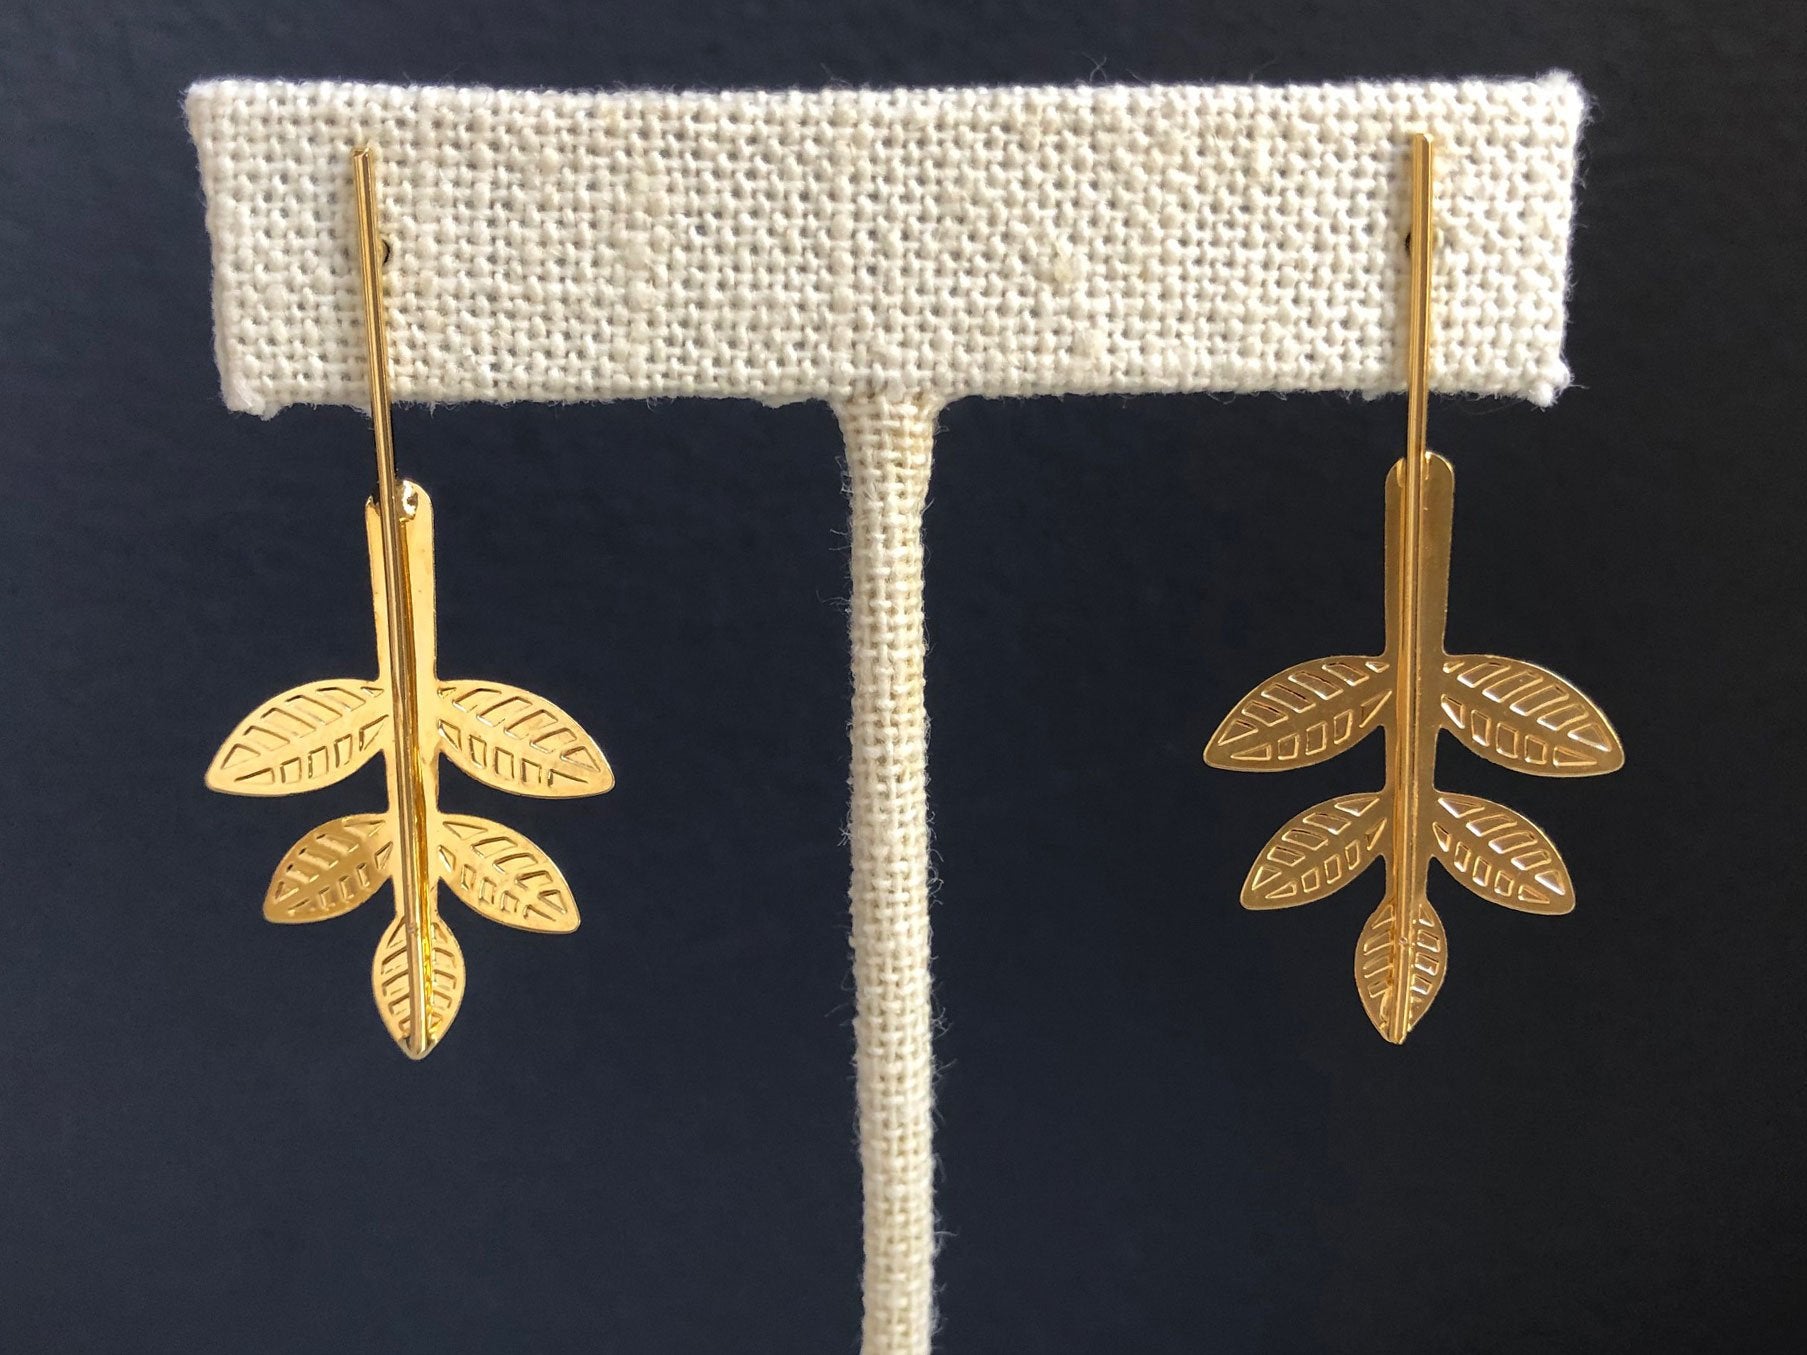 Gold filled leaves earrings